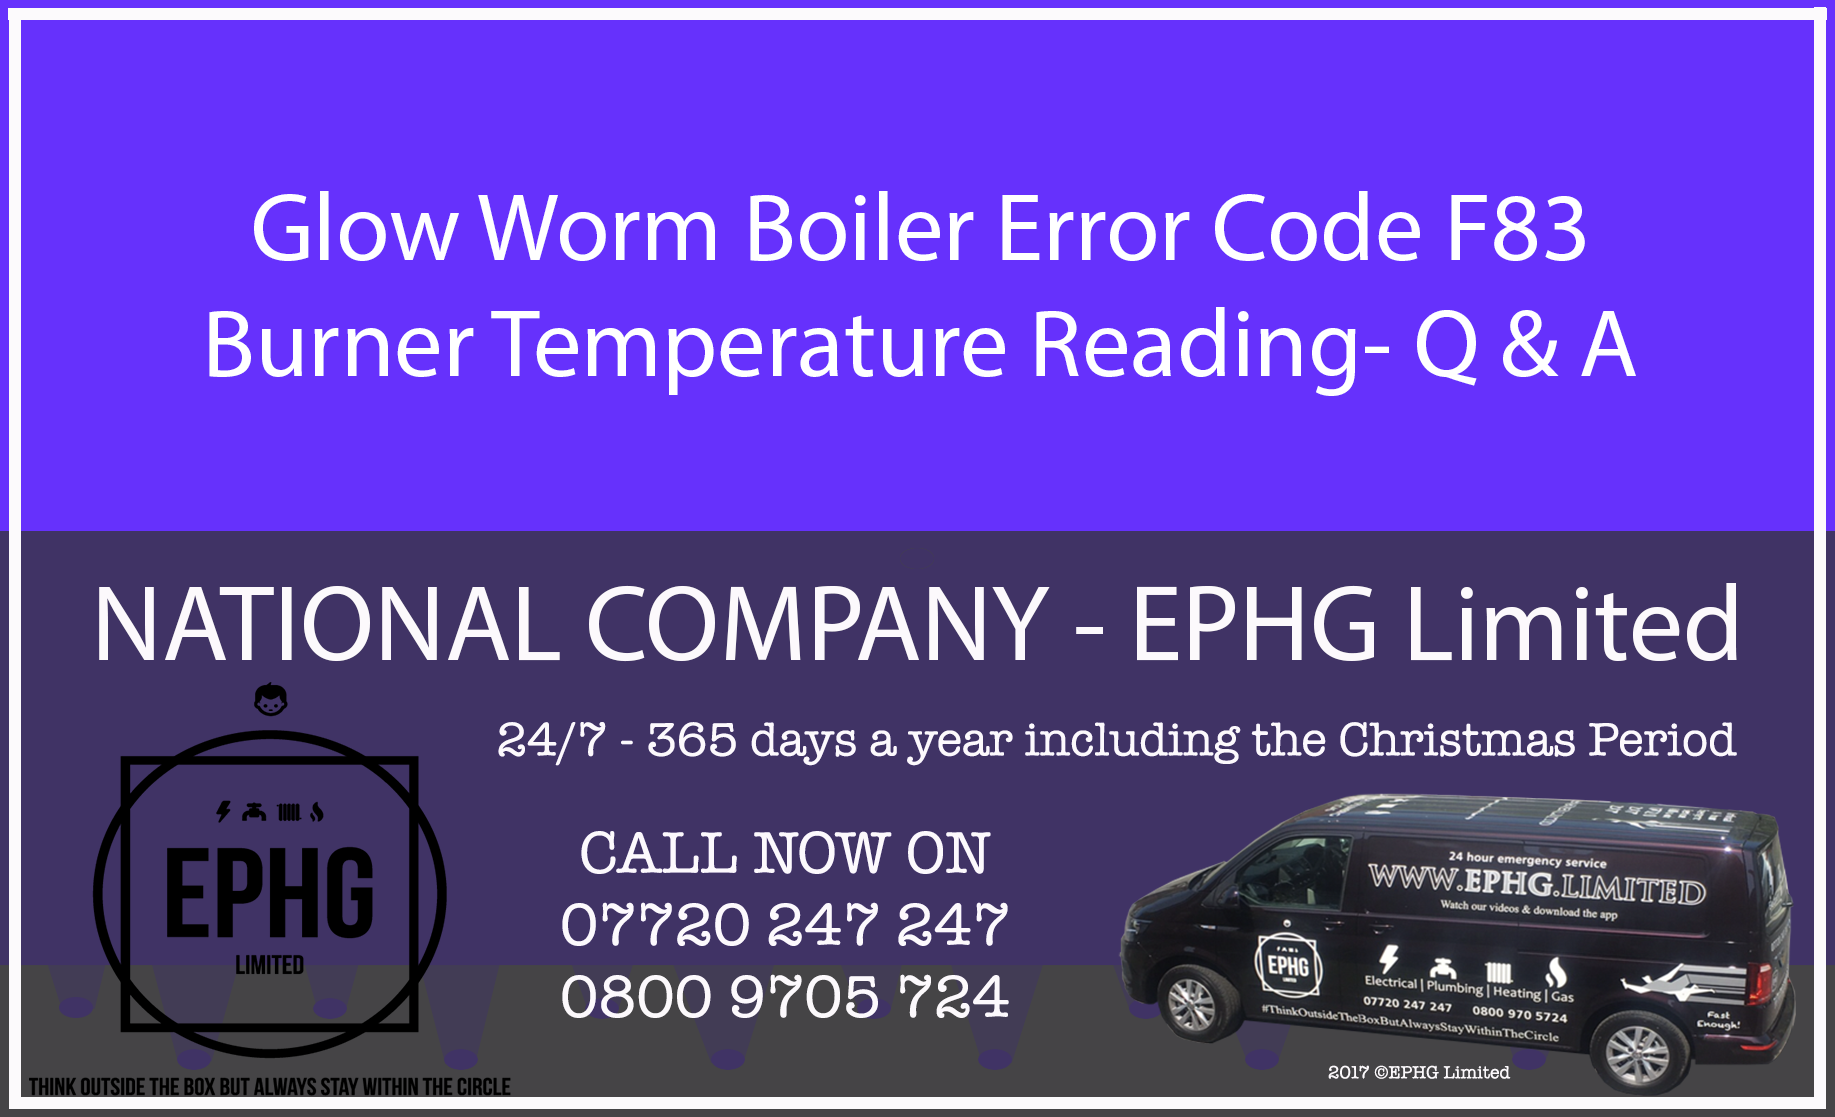 Glow-Worm boiler error code F.83